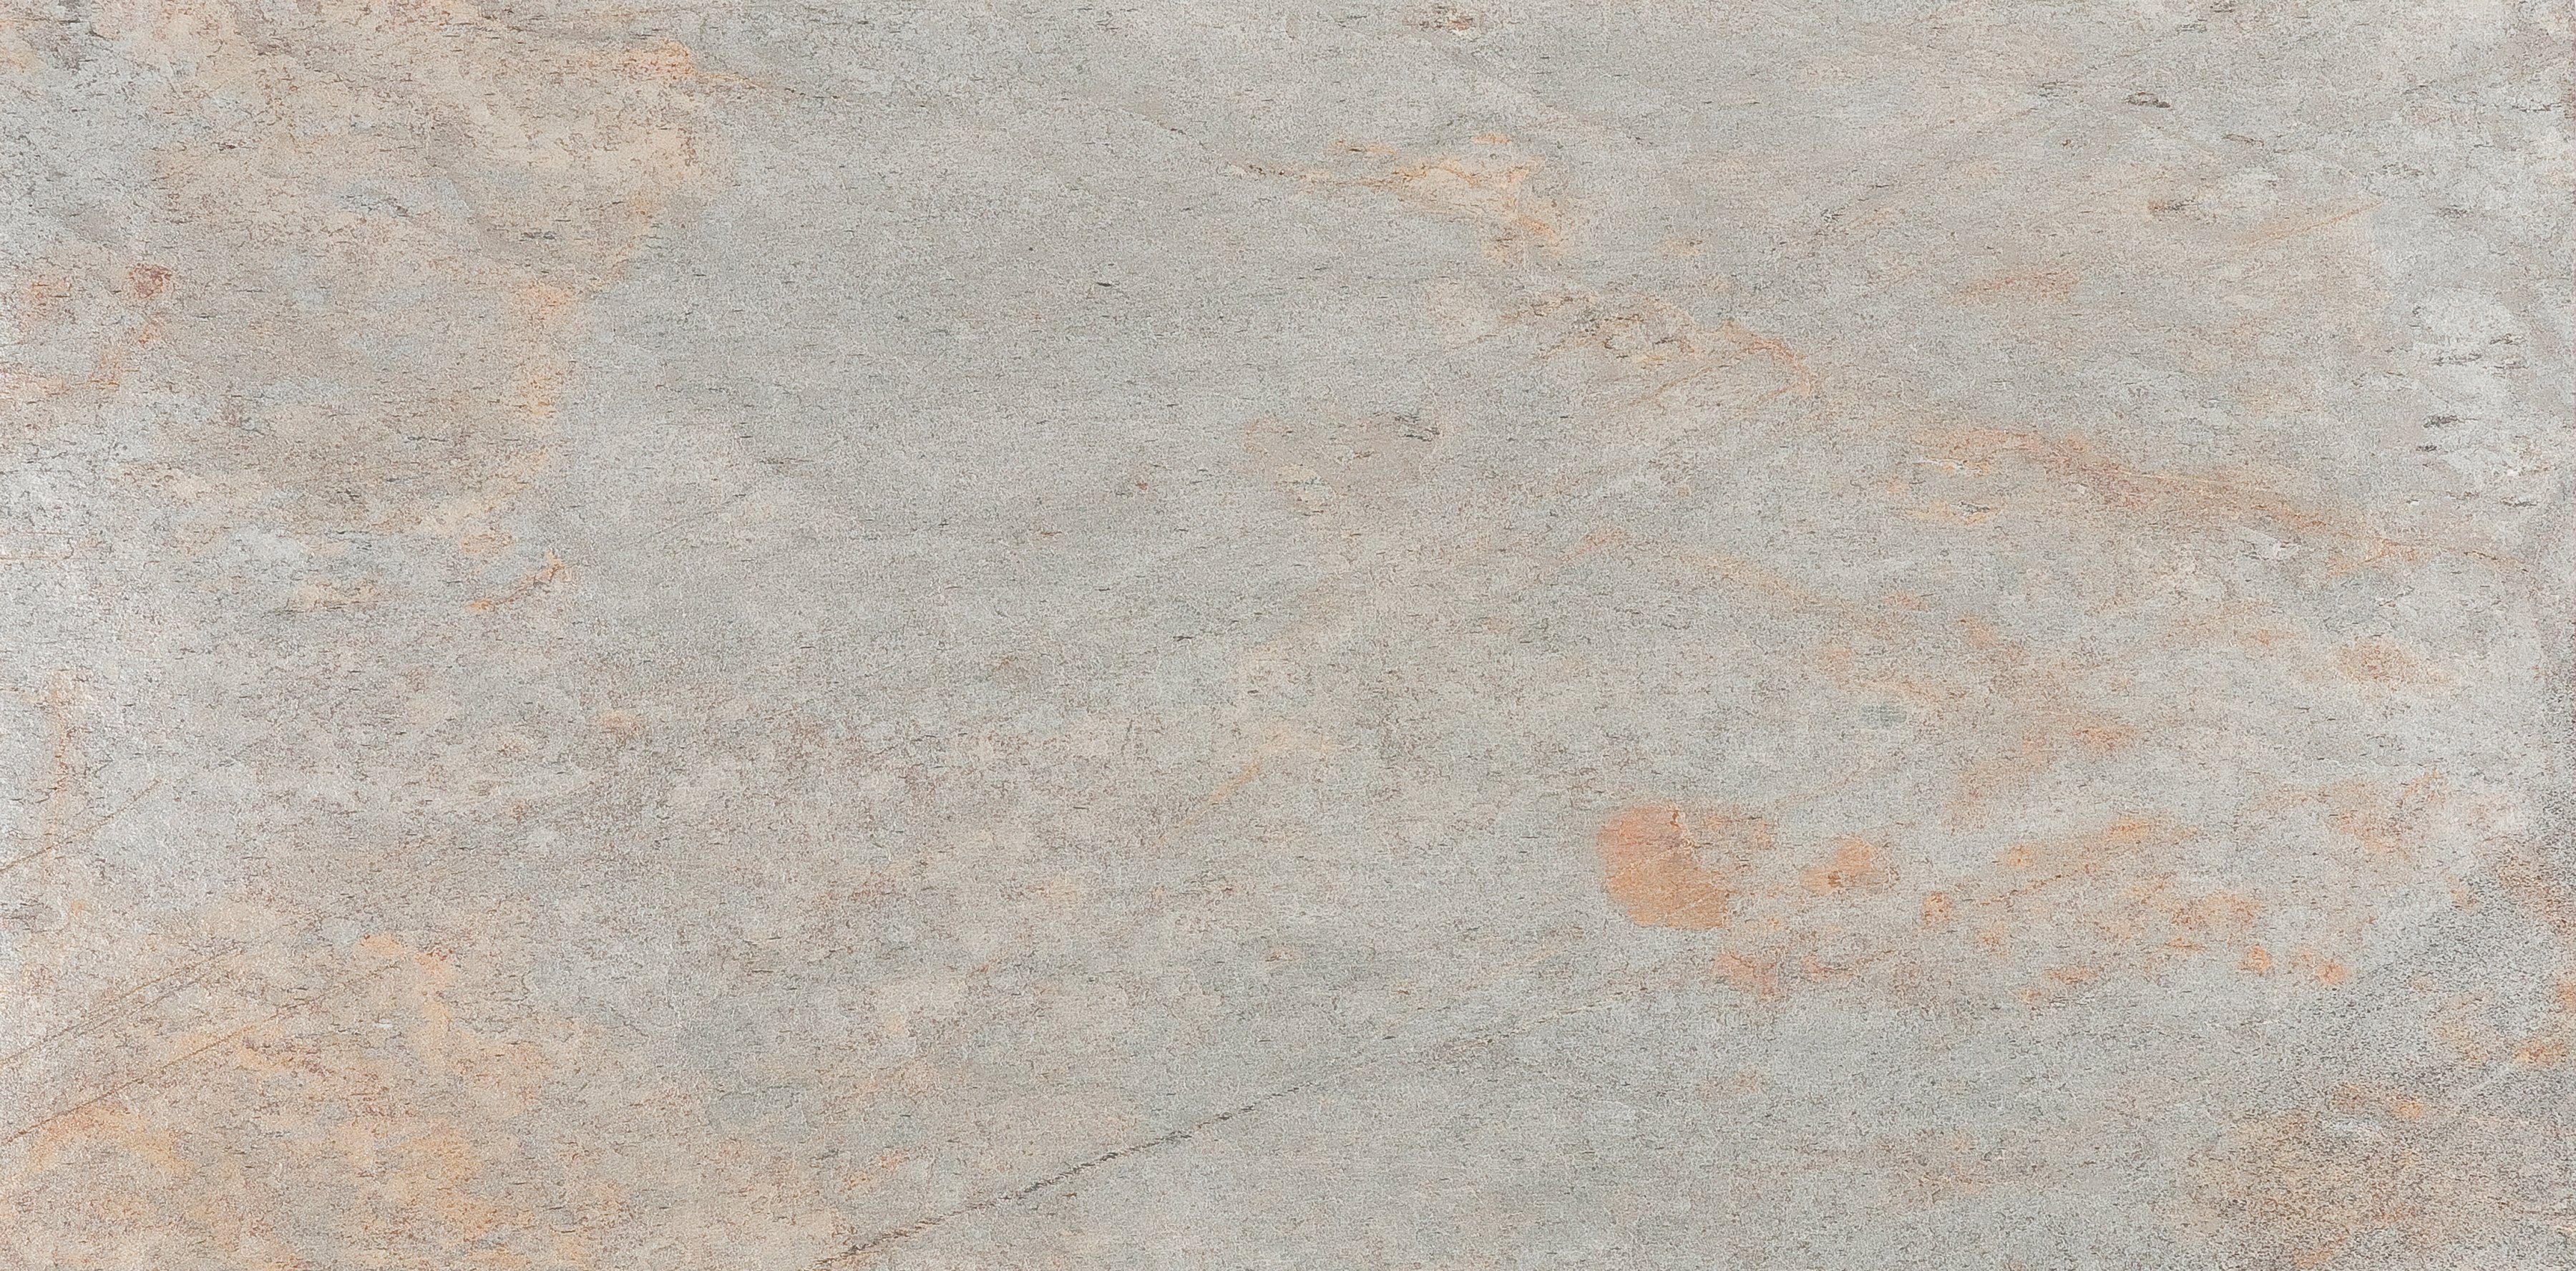 Slate Lite Wandpaneel Argento Auro, BxL: 120x240 cm, 2,88 qm, (1-tlg) aus Echtstein